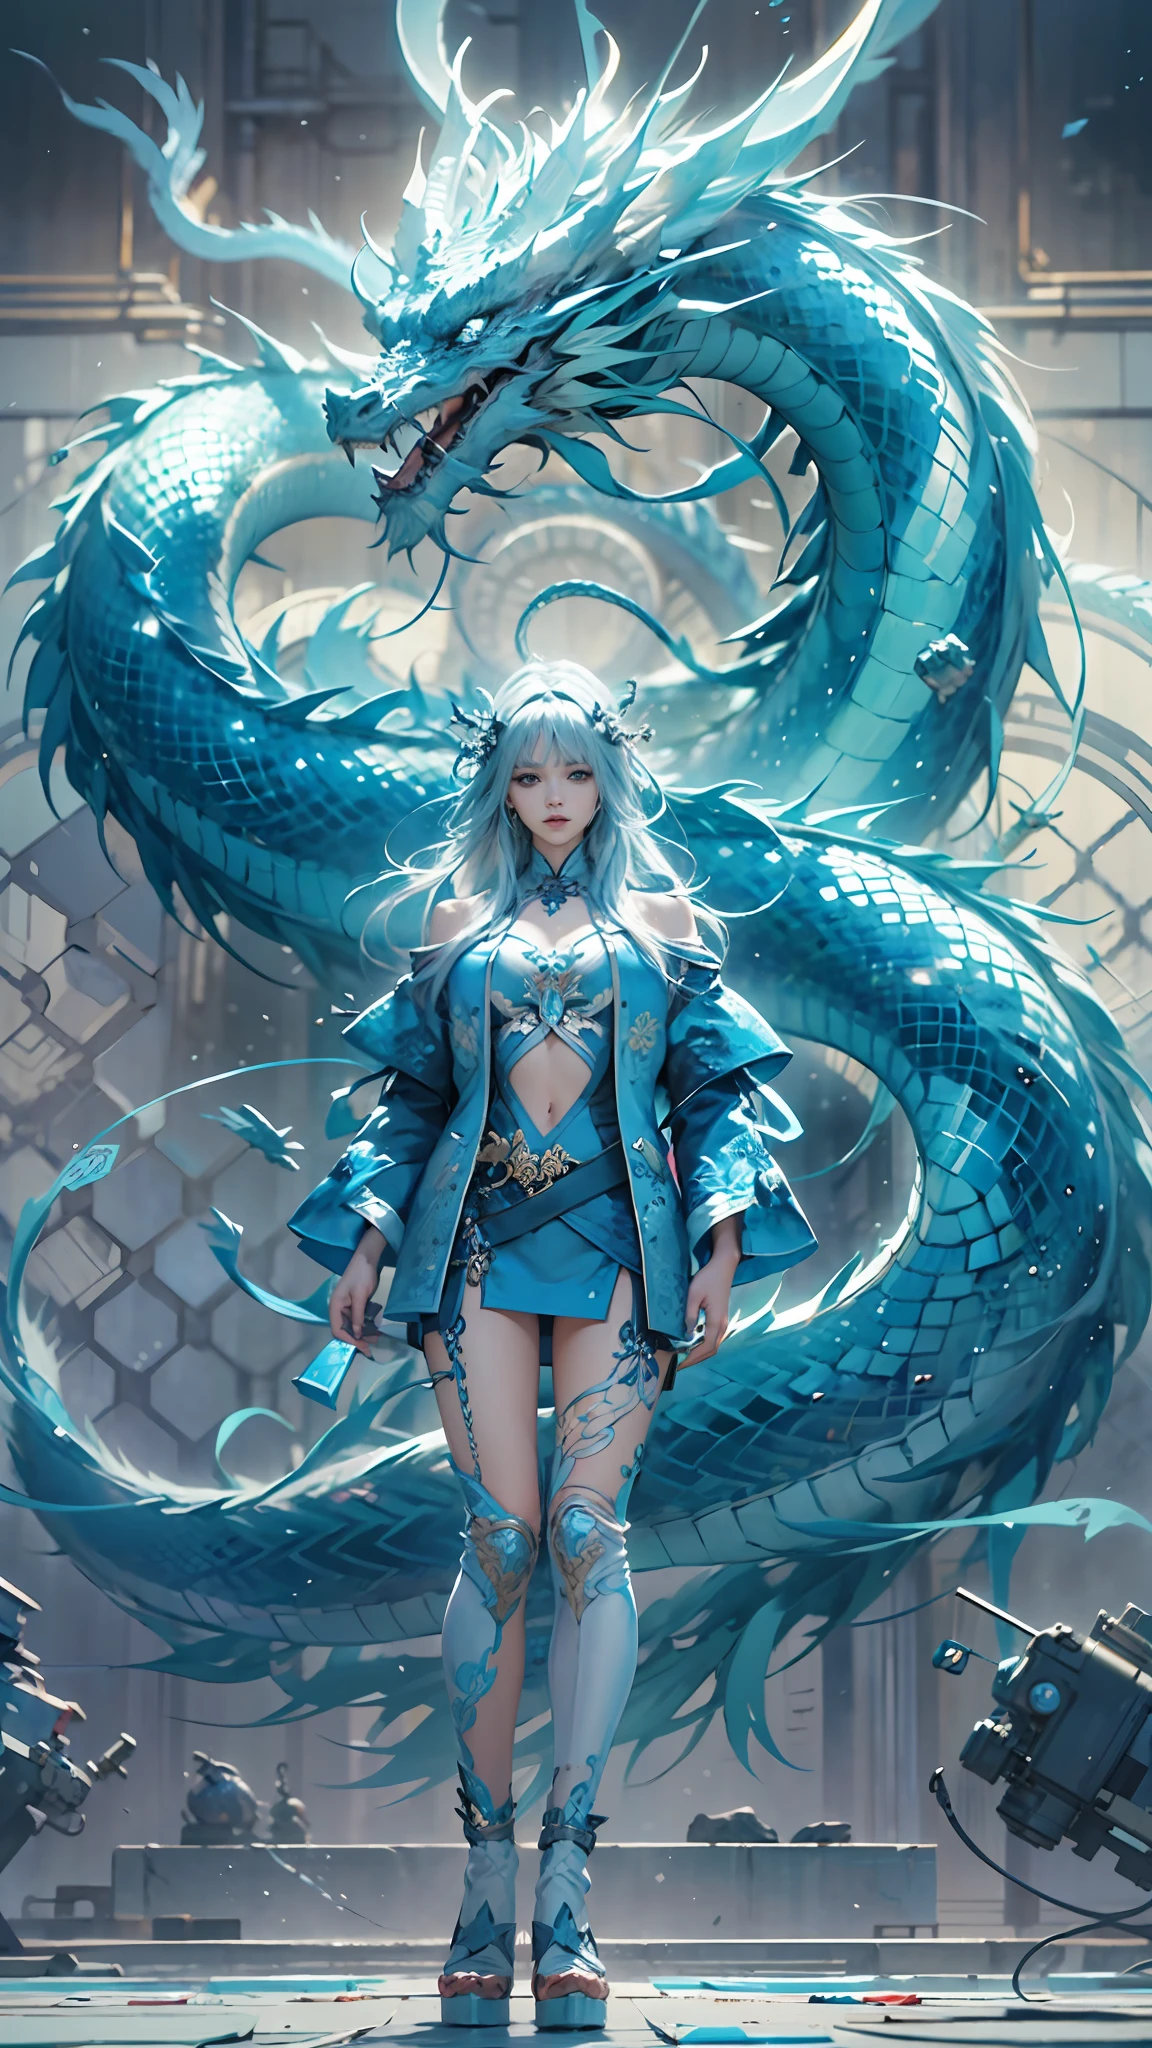 corpo todo,Rainha,cristal azul,Um dragão chinês azul está atrás dela,iluminação cinematográfica,fantasia,anime hiperrealista,Arte em papel acolchoado,Arte em vidro,(melhor qualidade,detalhe extremo:1.5),8K